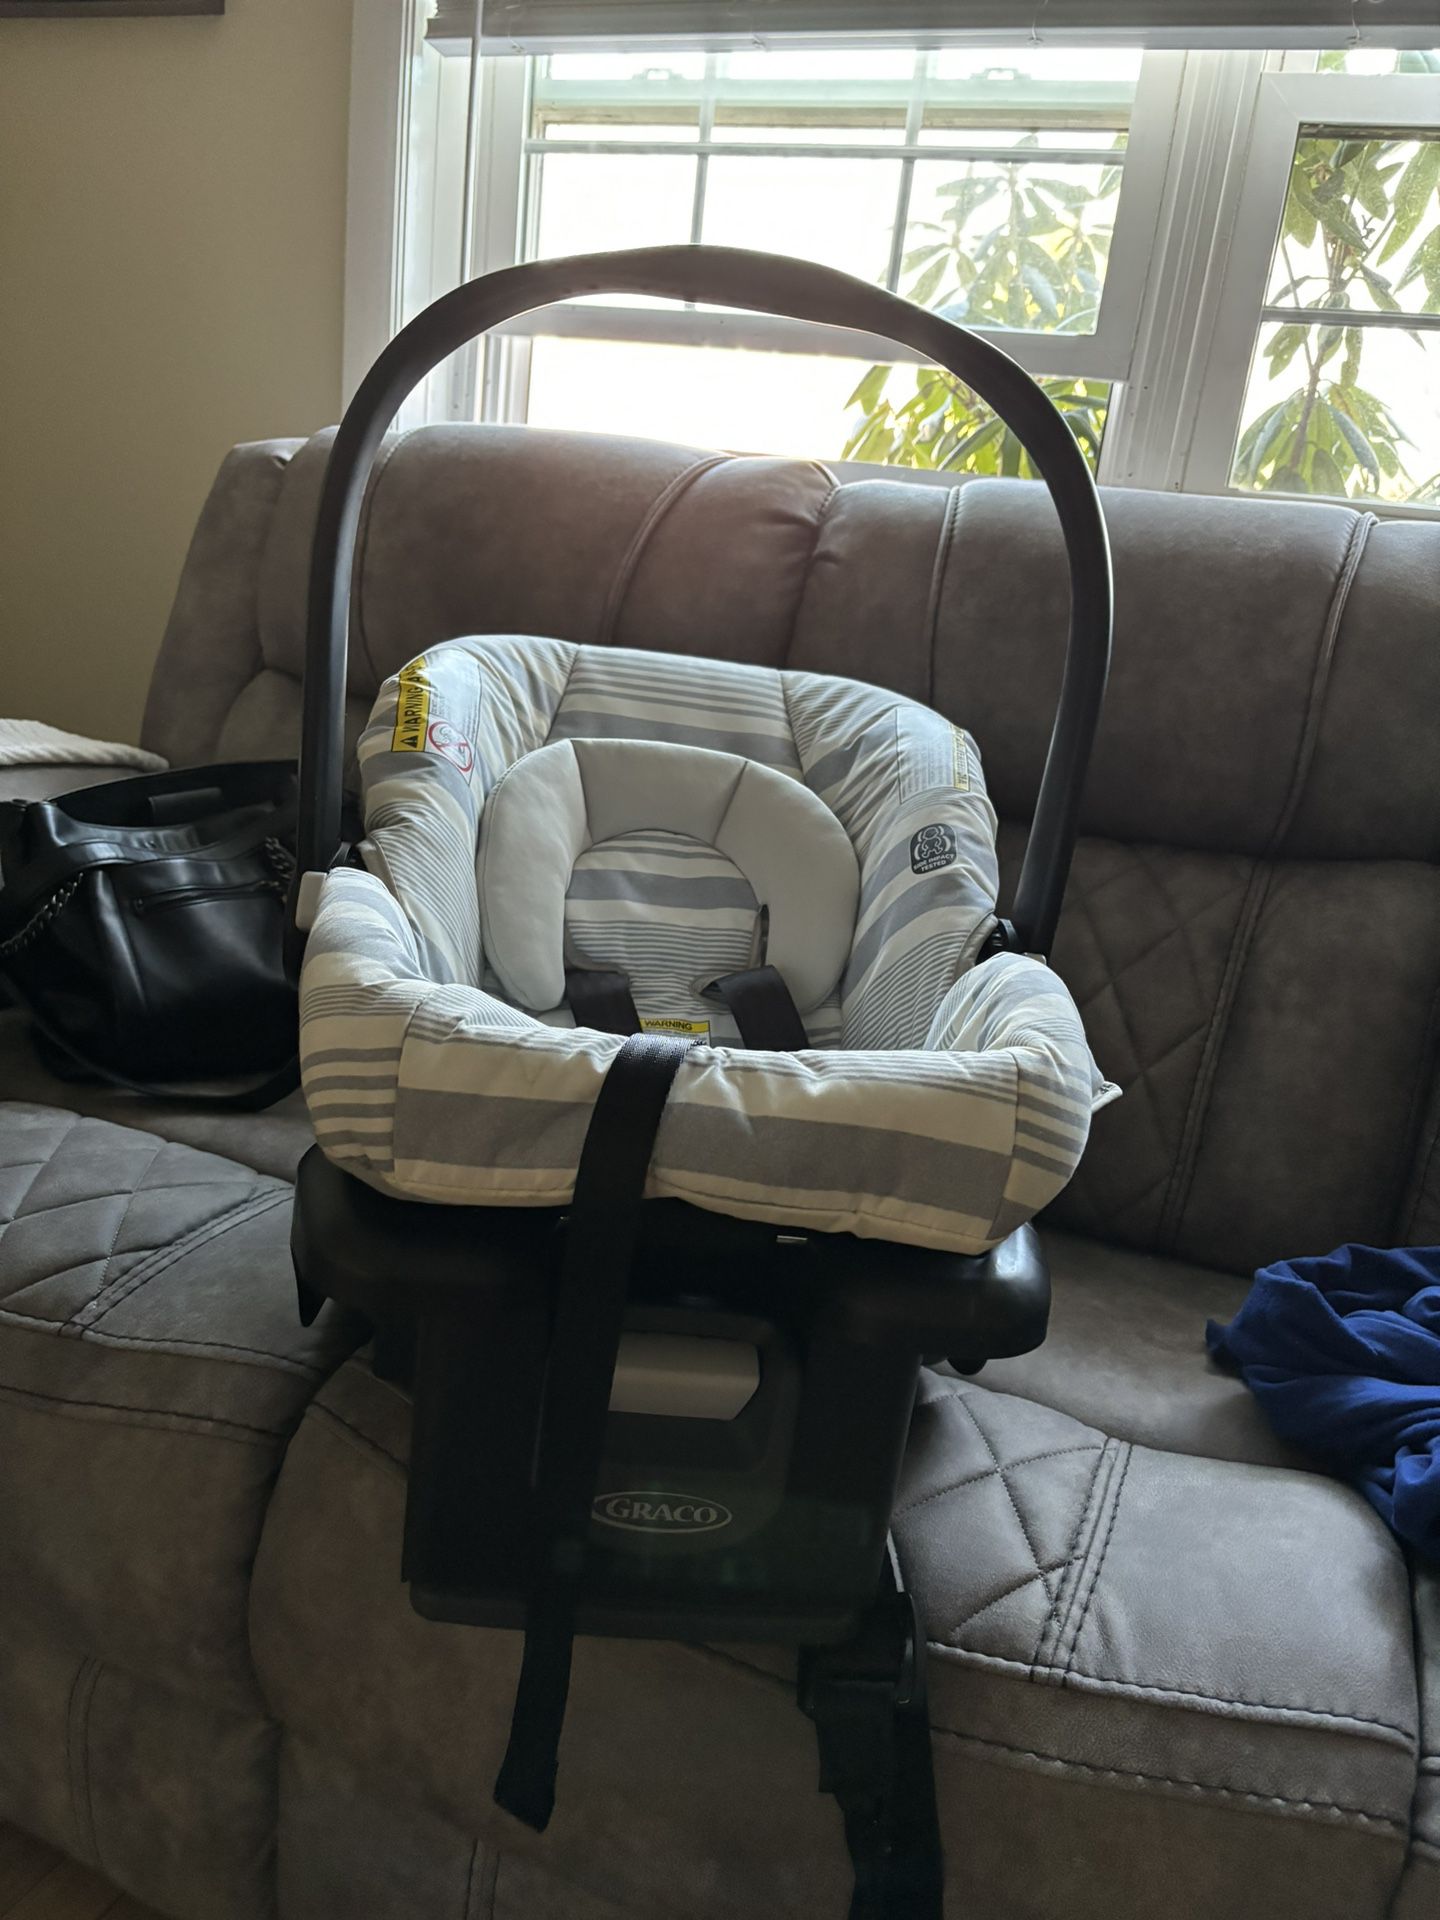 Graco SnugRide 35 Infant Car Seat